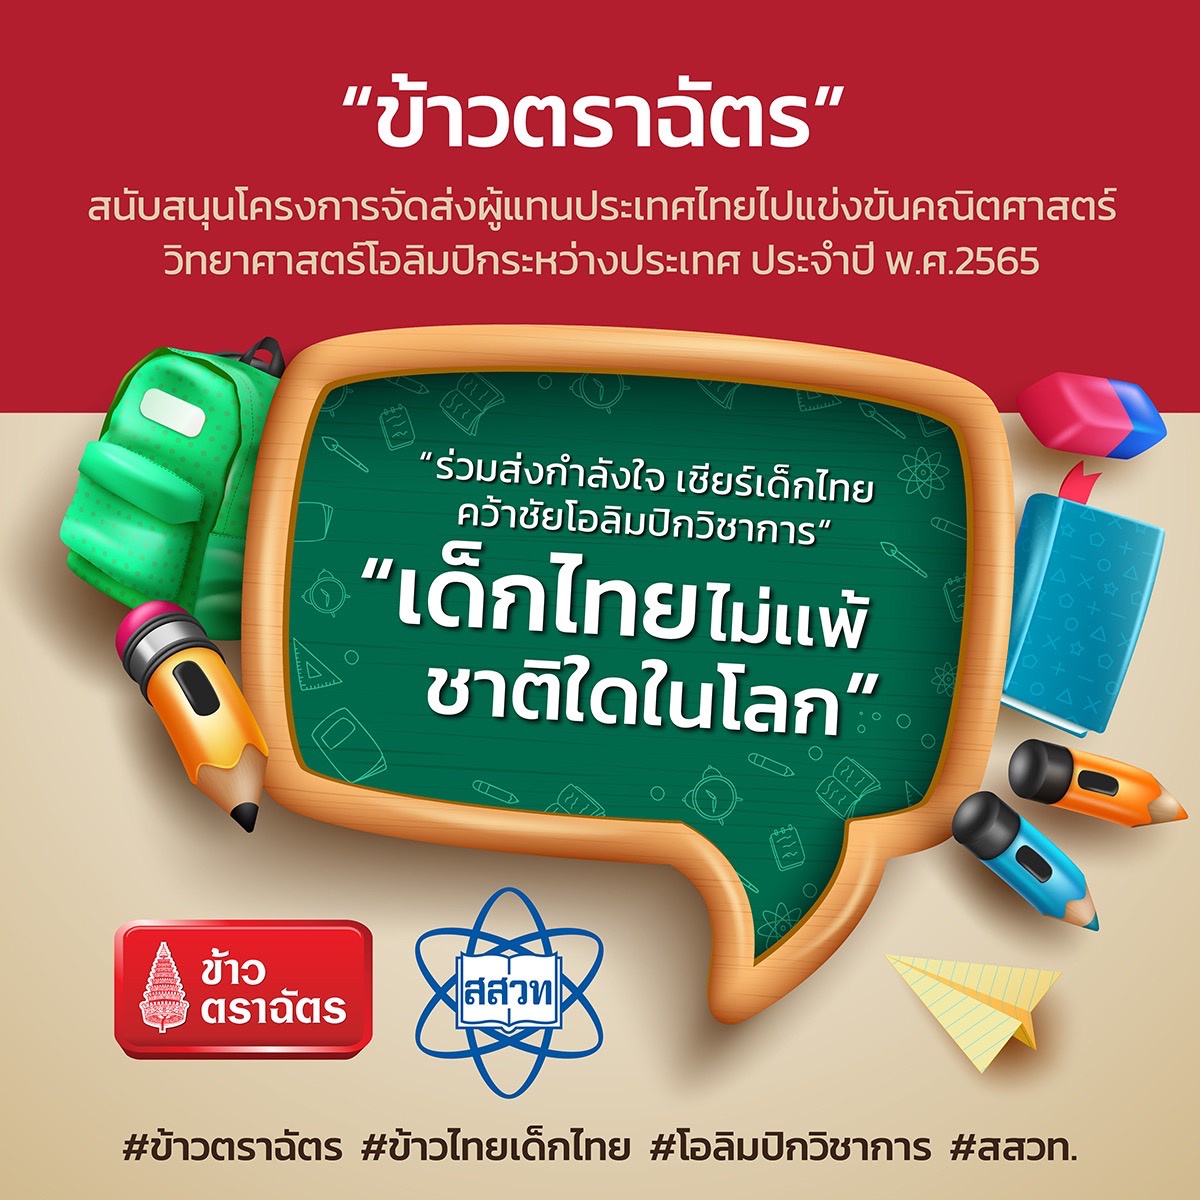 โครงการ ข้าวไทย เด็กไทย โดยข้าวตราฉัตร ก้าวสู่ปีที่ 18 ส่งเสริมอัจฉริยะเด็กไทย สู่เส้นทางโอลิมปิกวิชาการระดับโลก